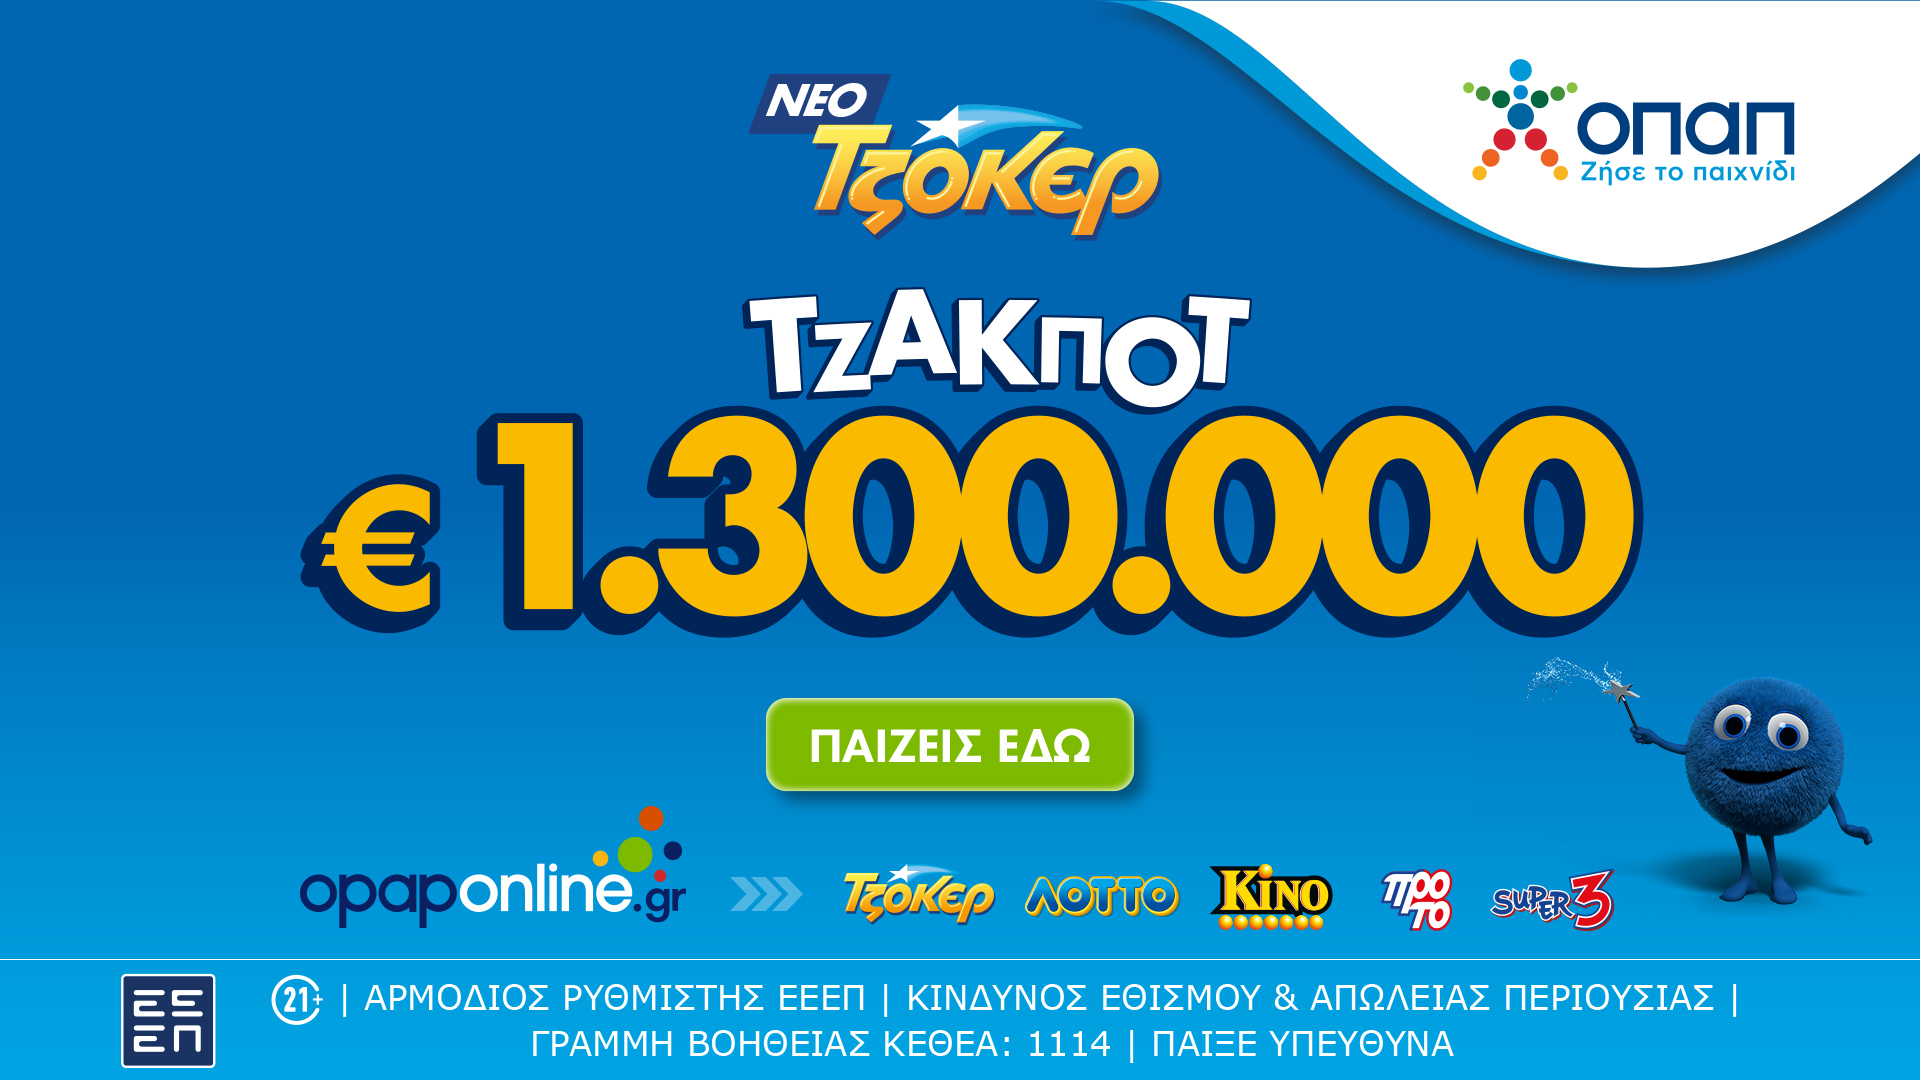 Στο Opaponline App παίζεις ΤΖΟΚΕΡ διαδικτυακά – 1,3 εκατομμύριο και 100.000 ευρώ σε κάθε τυχερό 5άρι κληρώνει απόψε το παιχνίδι